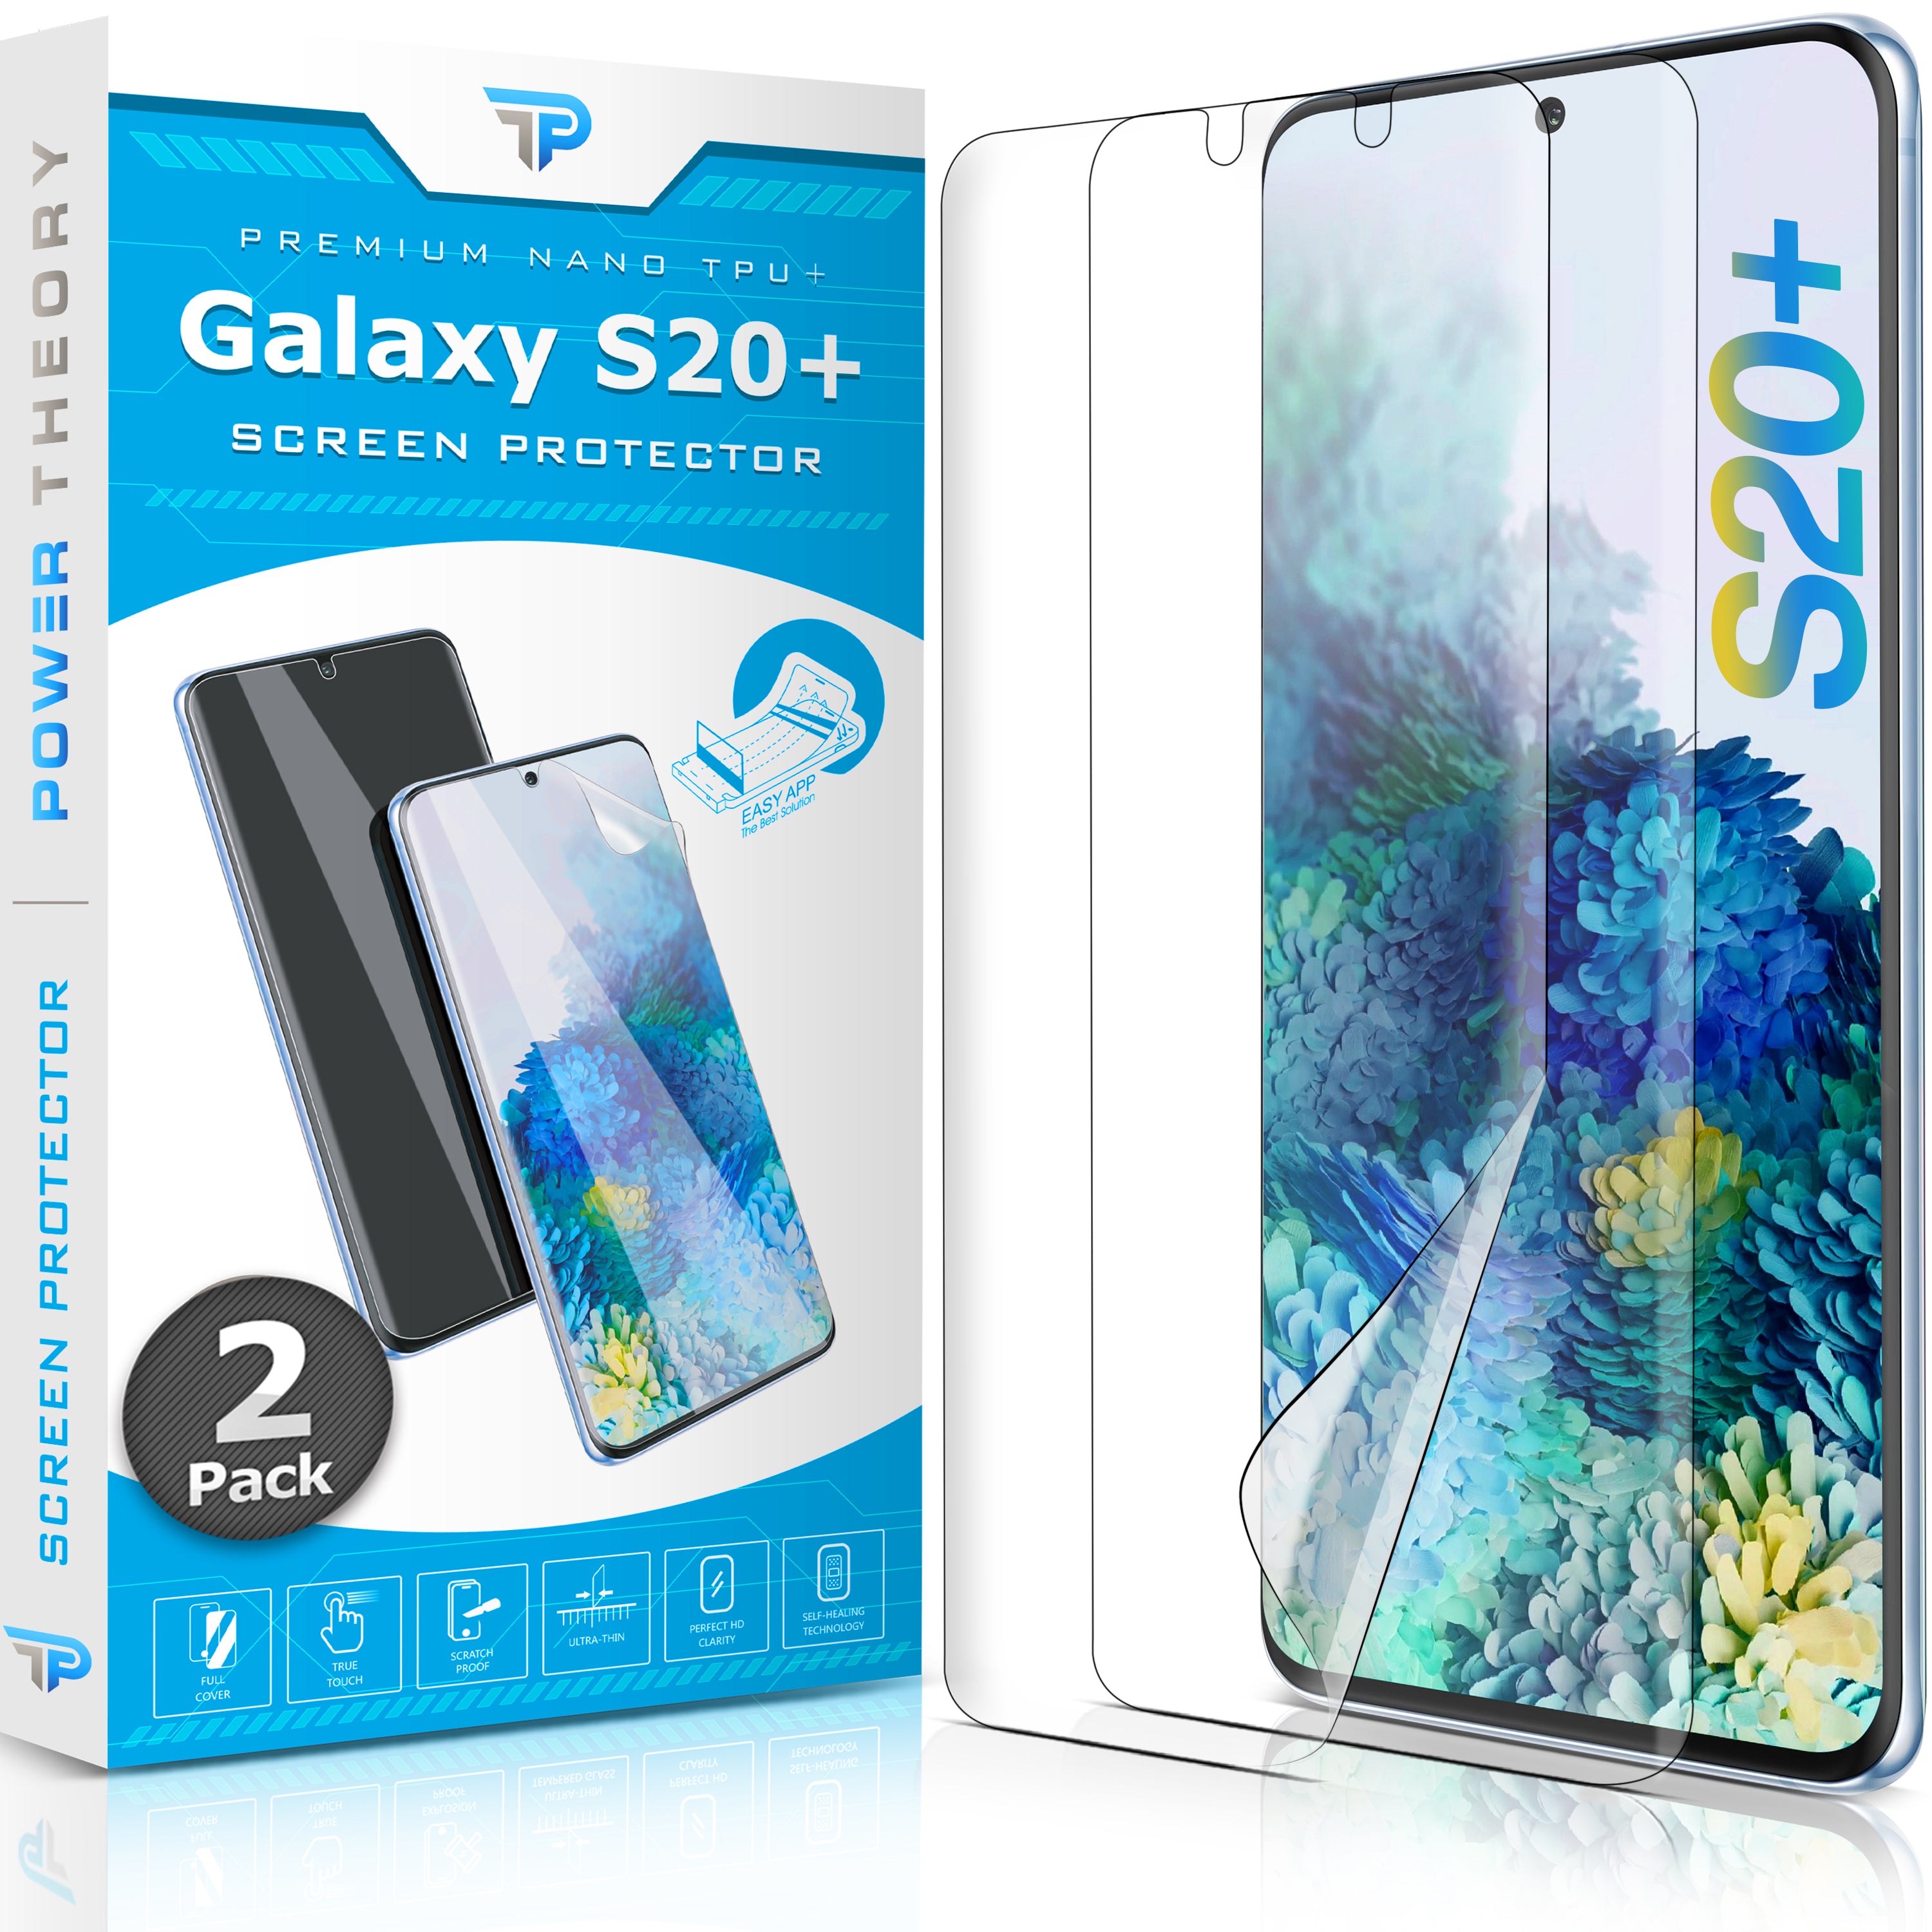 Samsung Galaxy S20 Plus TPU Anti-Scratch Screen Protector Film [2-Pack]